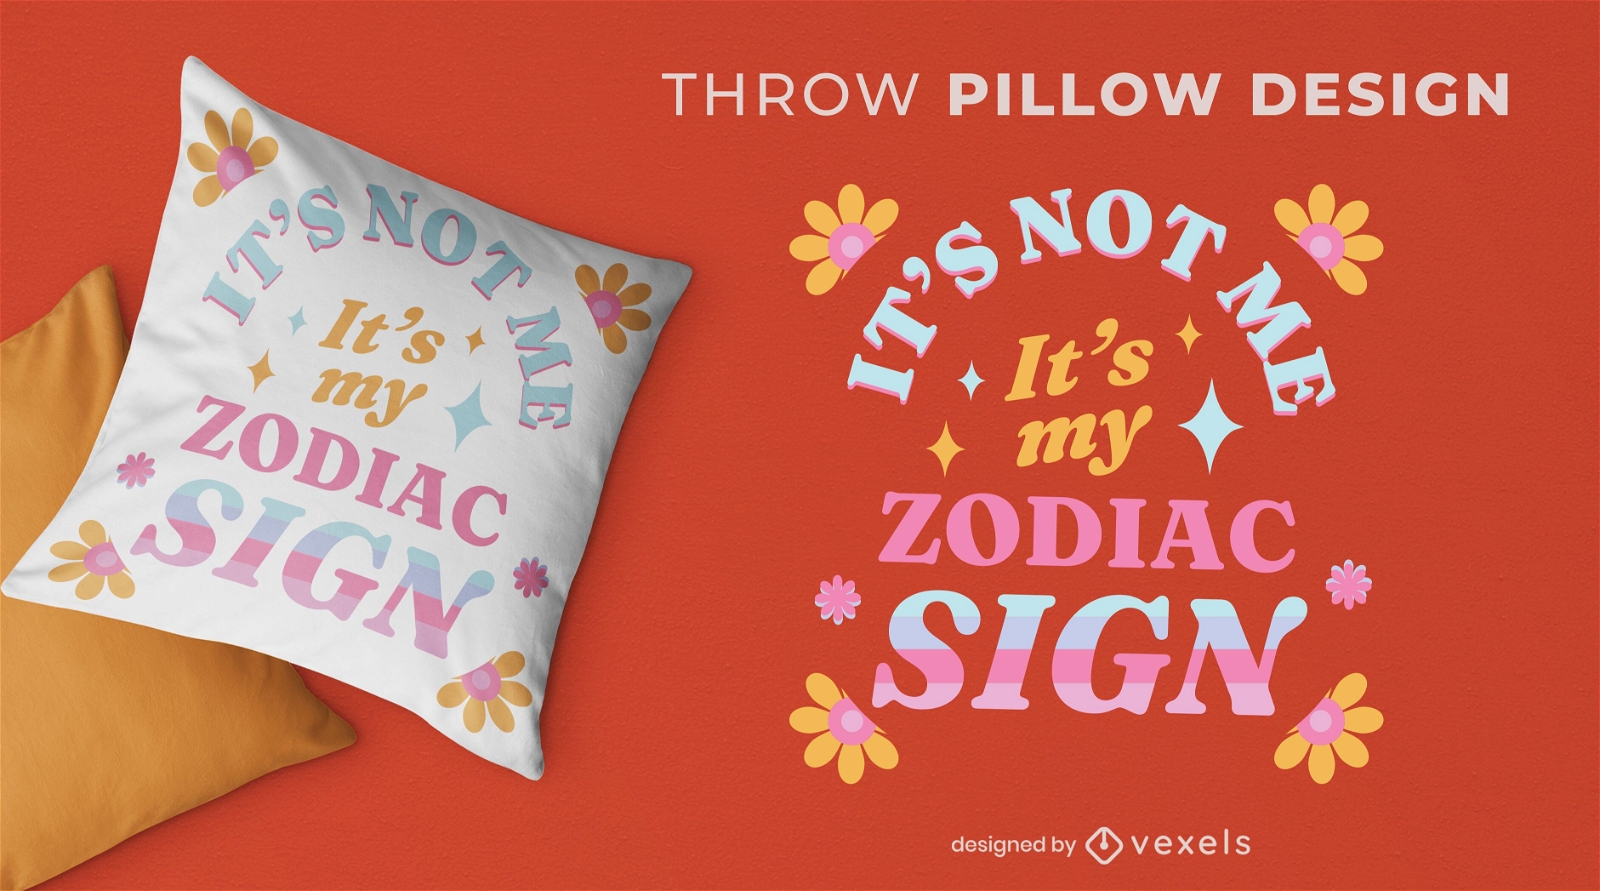 Zodiac sign retro floral throw pillow design